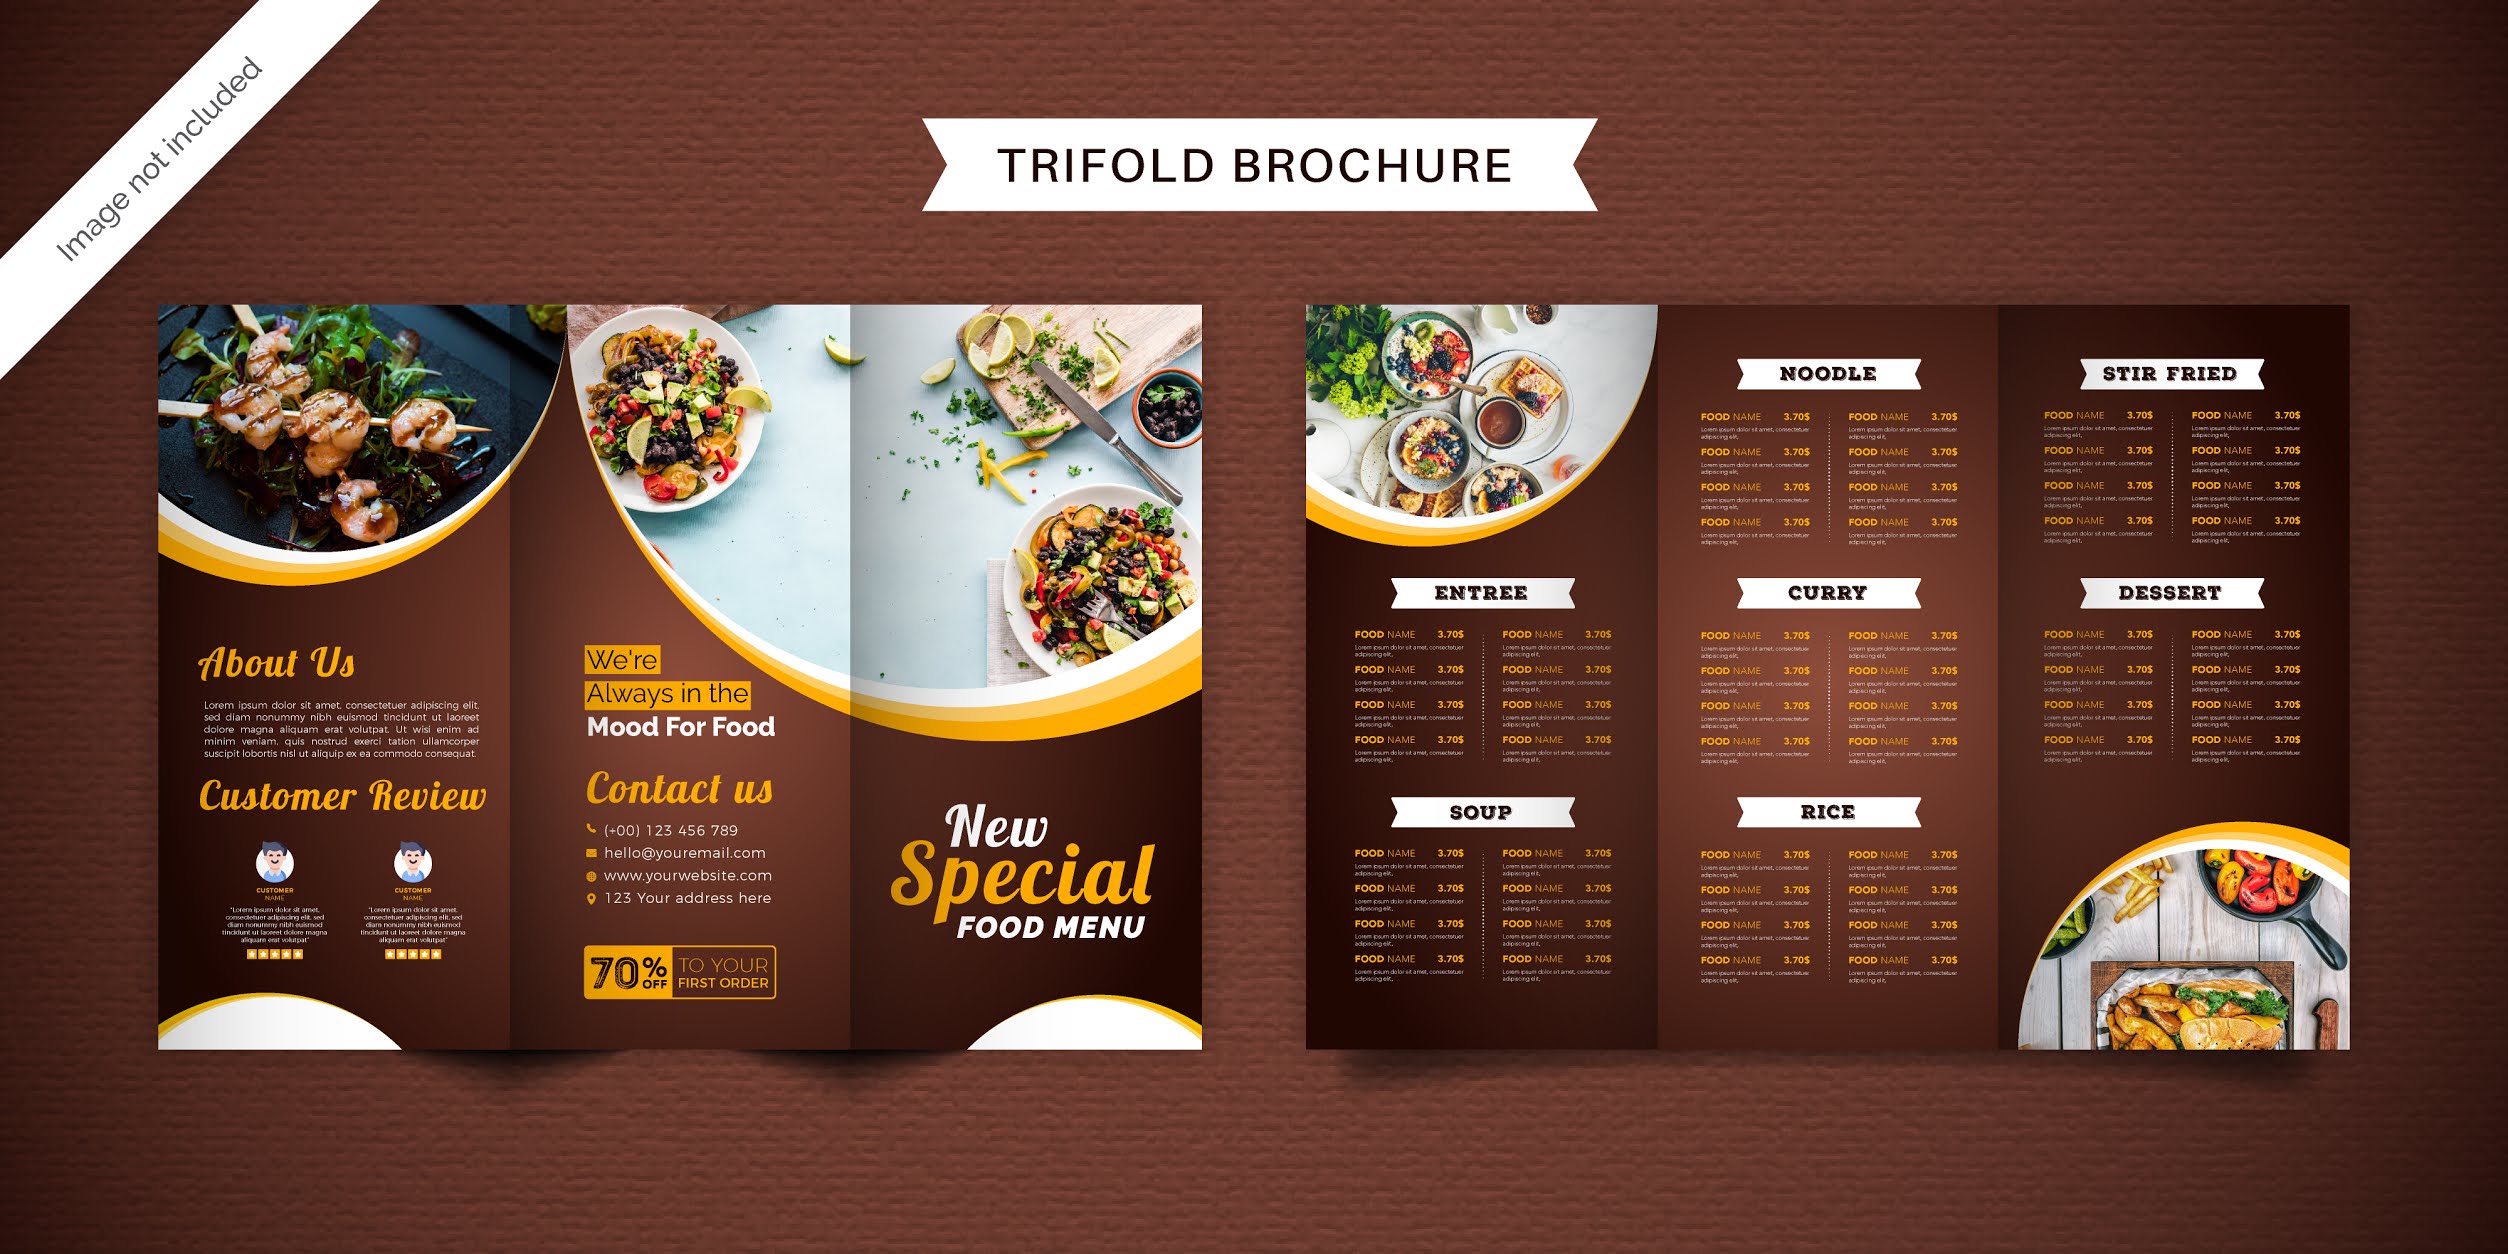 تحميل بروشور طعام مجانا 7 تصميمات احترافية مجموعة 2 بصيغة فيكتور ويمكنك تحويلها فيكتور